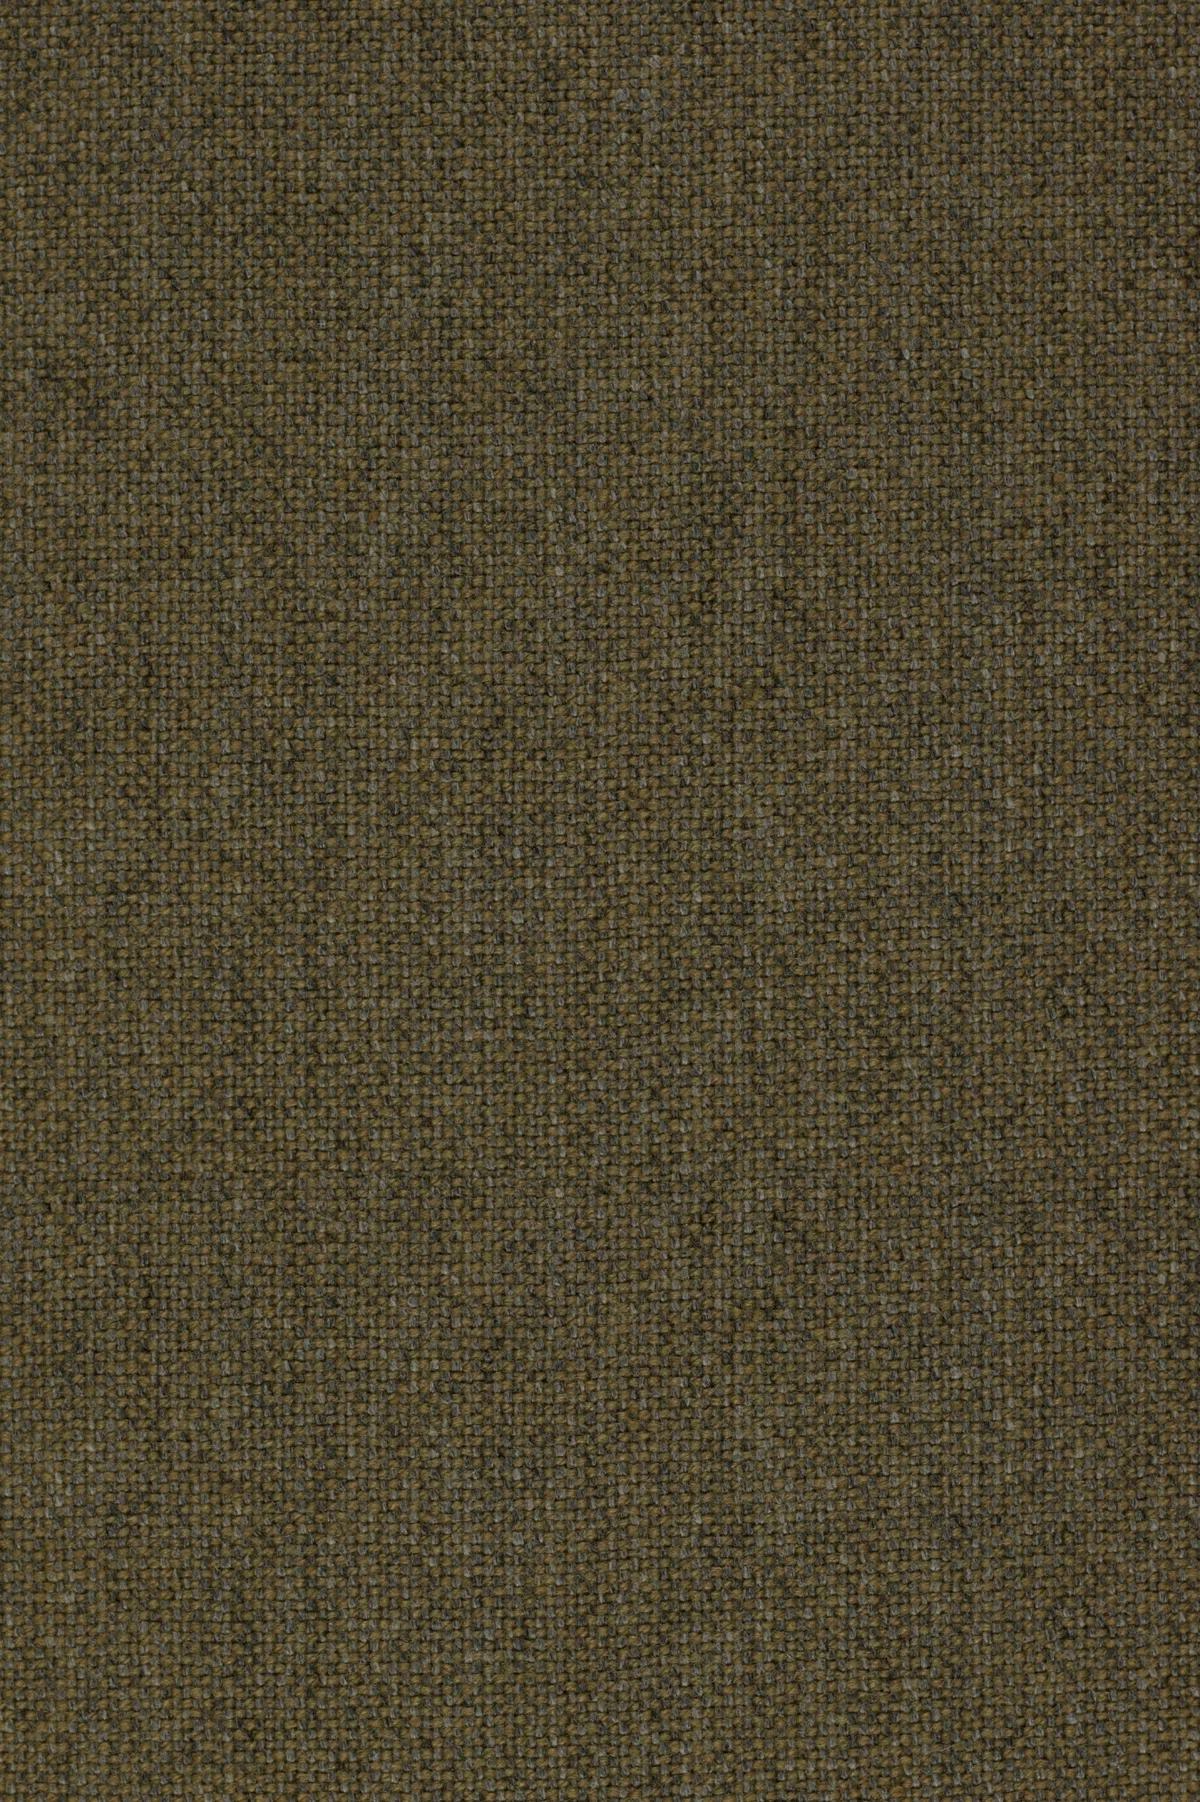 Fabric sample Hallingdal 65 227 brown